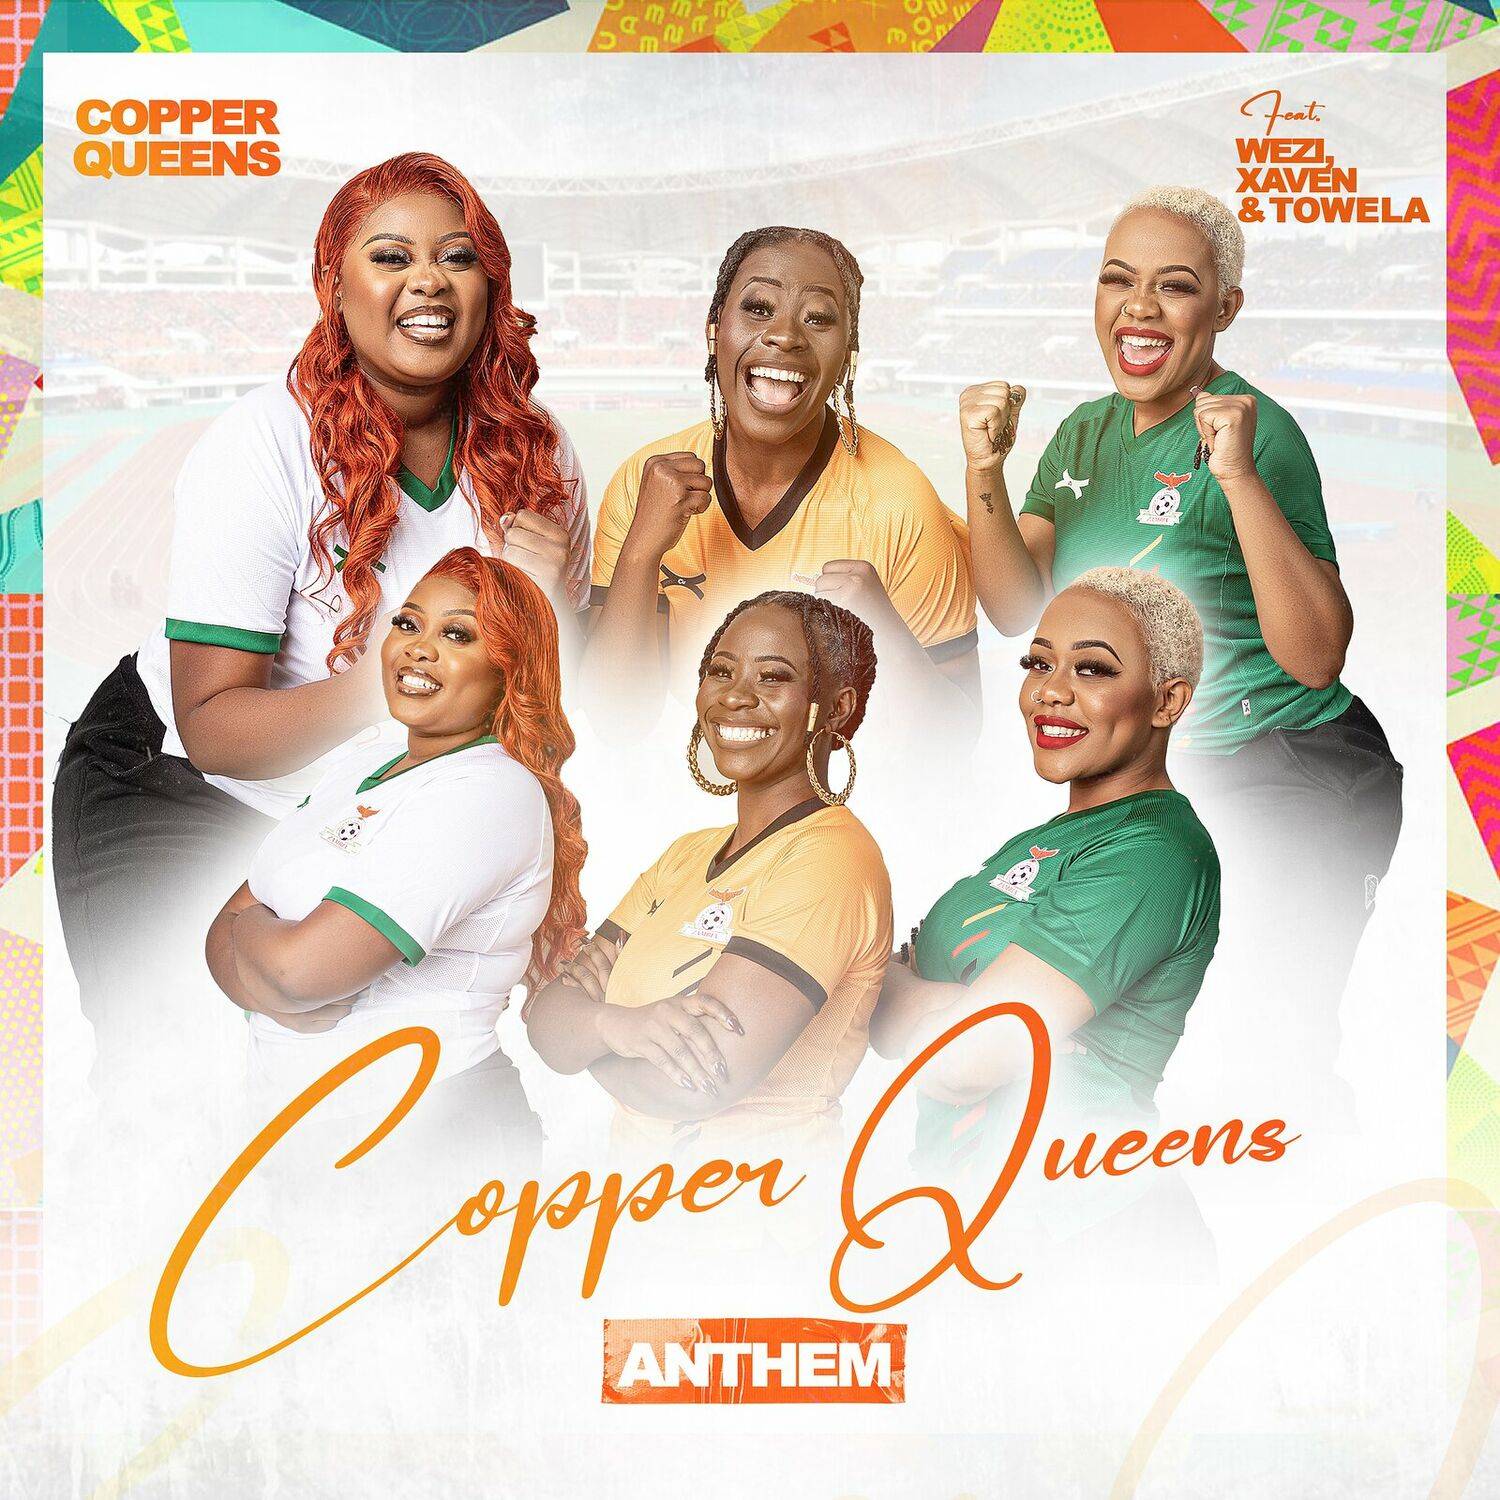 Wezi, Xaven & Towela - Copper Queens Anthem Mp3 Download